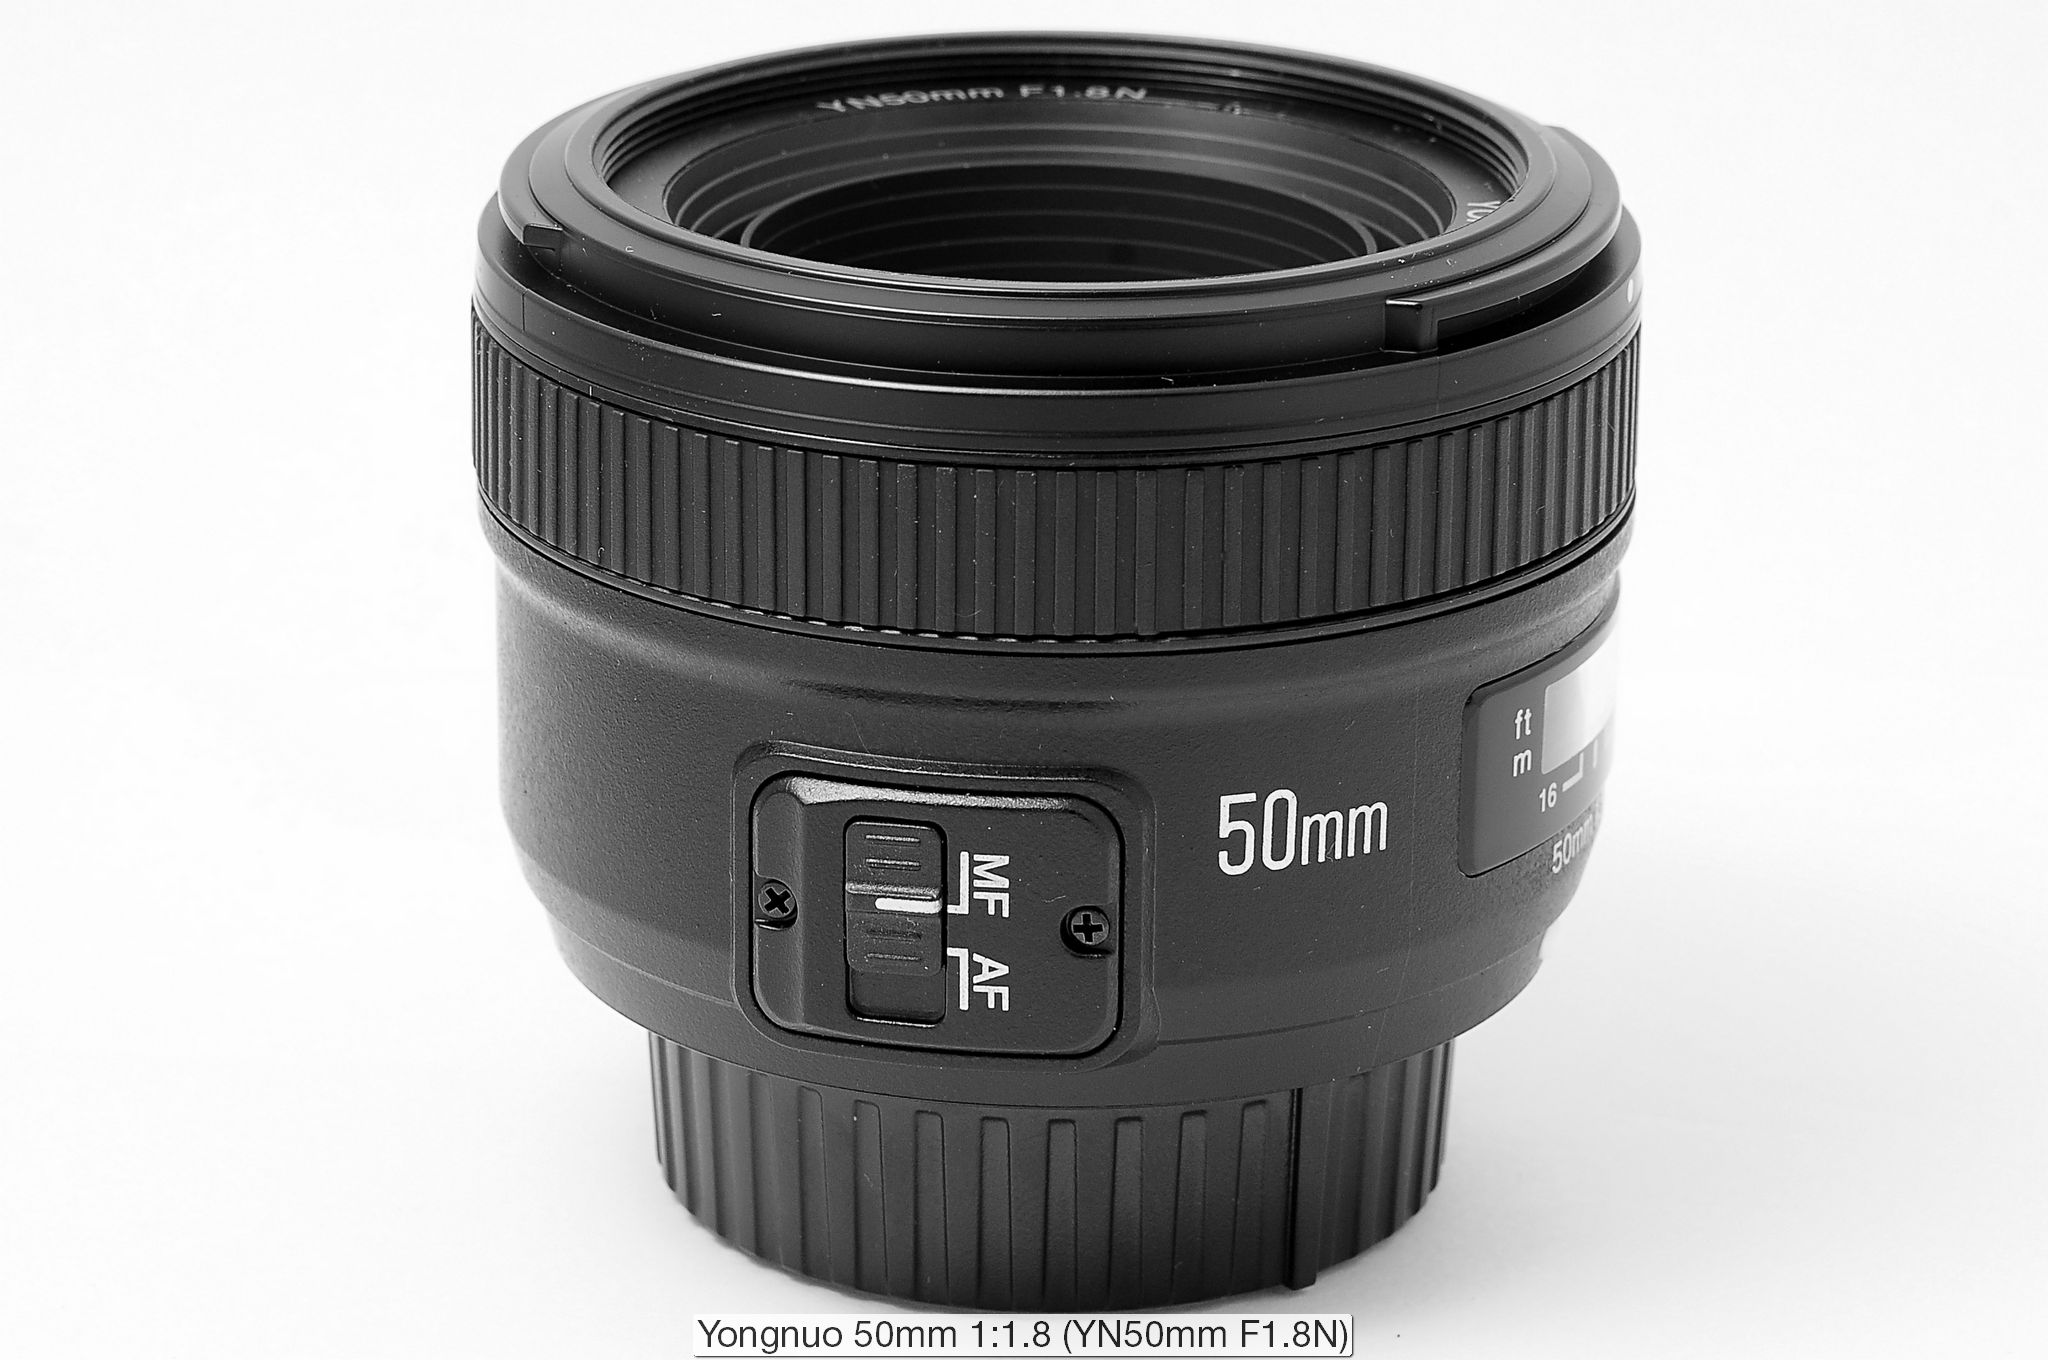 Yongnuo YN 50mm f/1.8 lens review (for Nikon F-mount) - Nikon Rumors